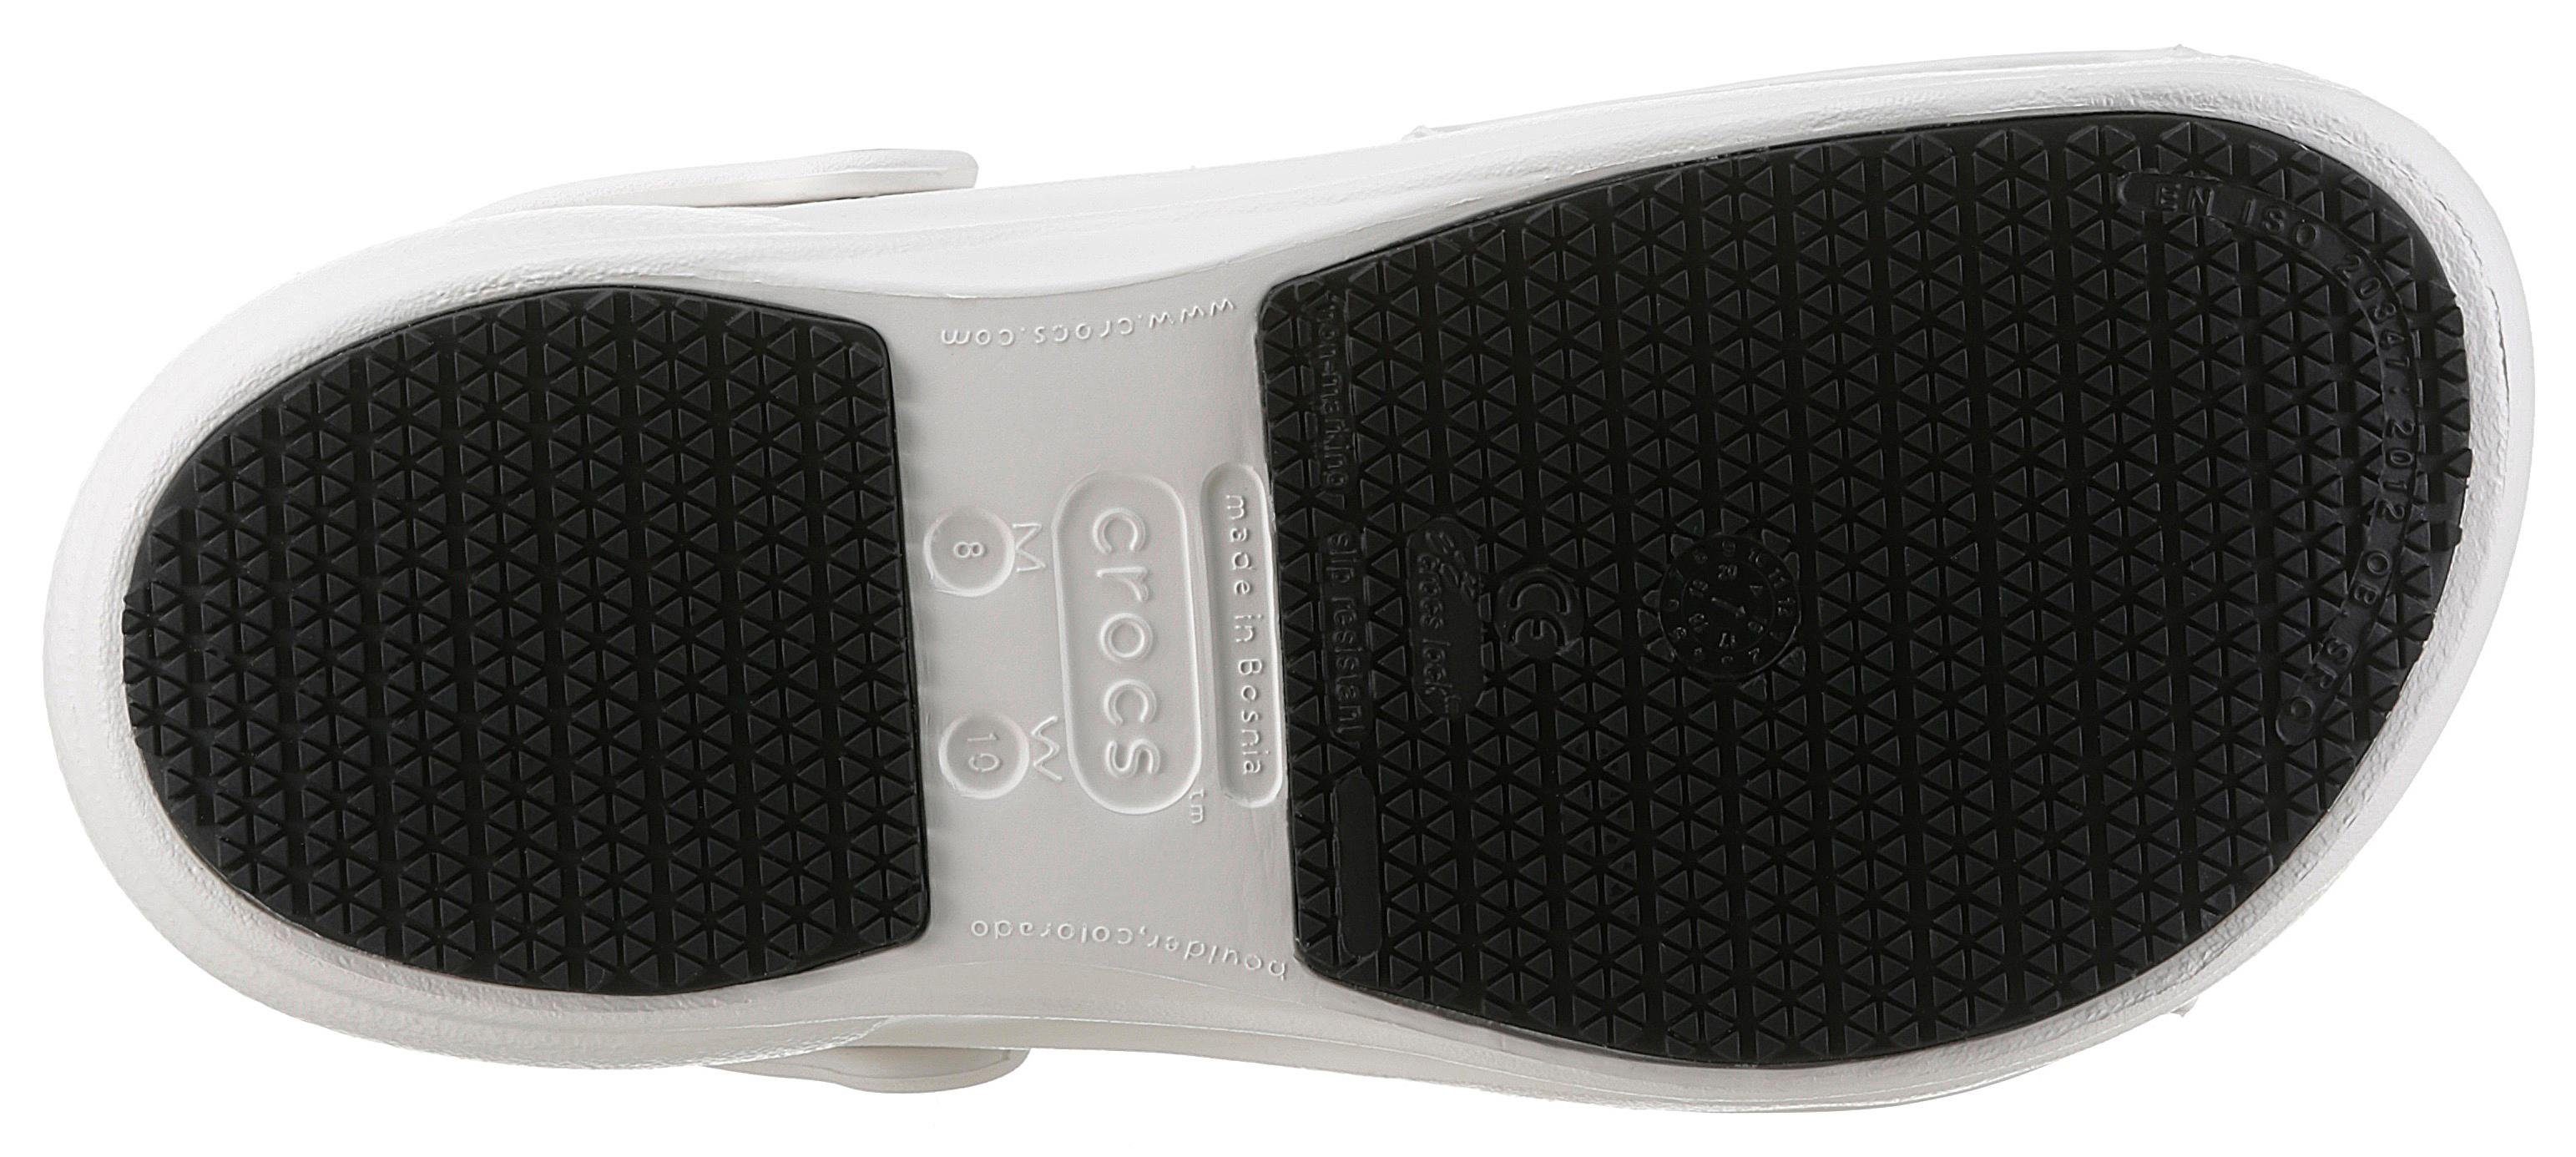 Crocs BISTRO Clog mit weiß-offwhite geschlossenem Fußbereich